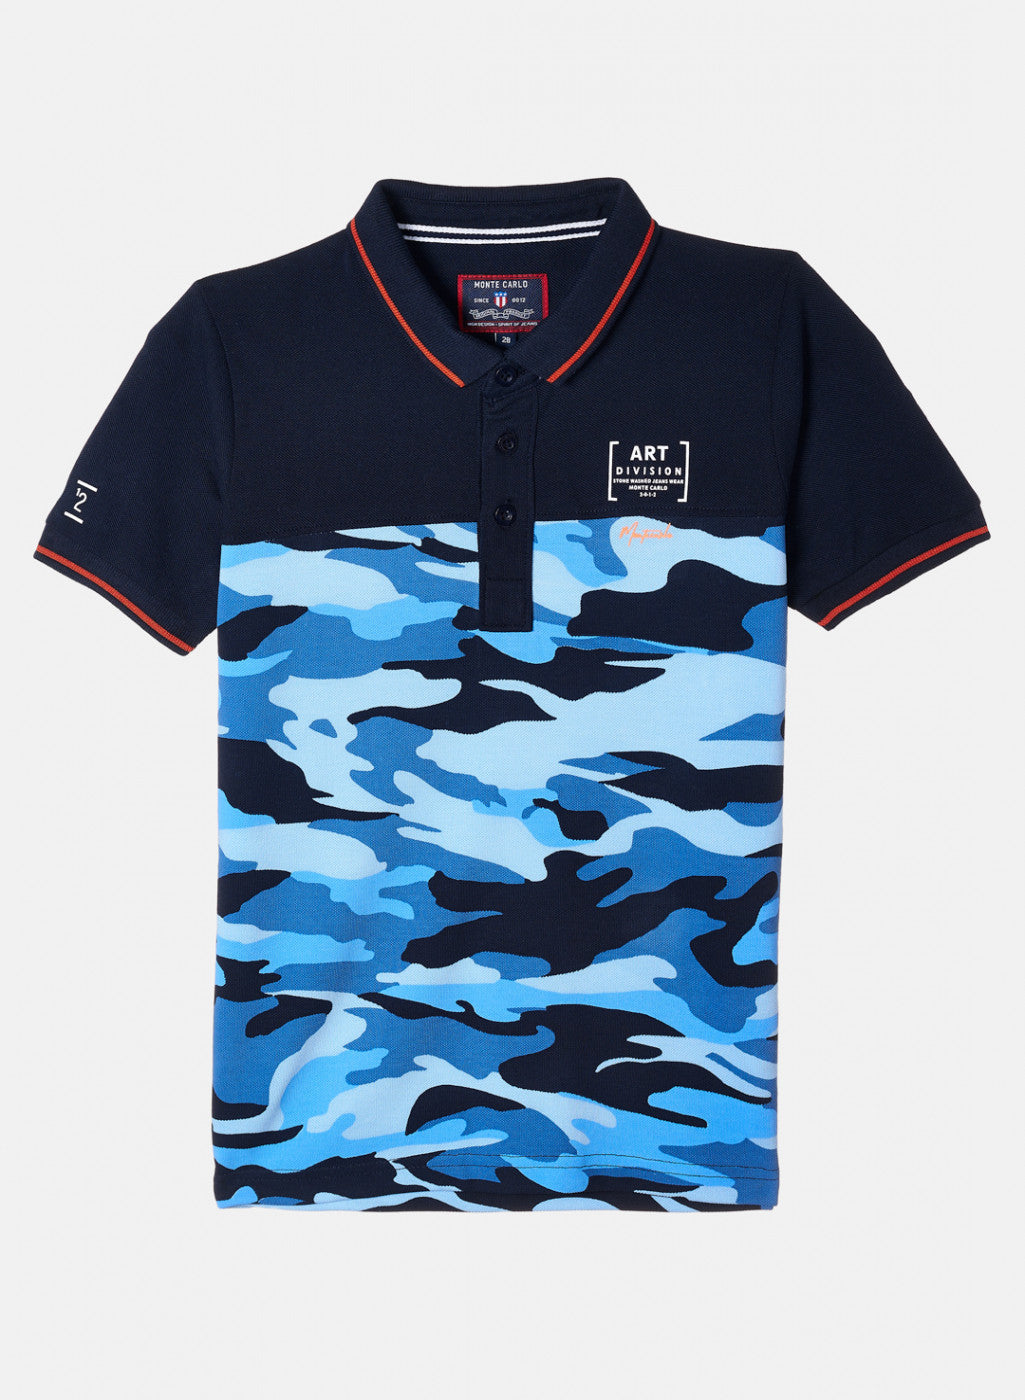 Boys Sky Blue & Navy Printed T-Shirt